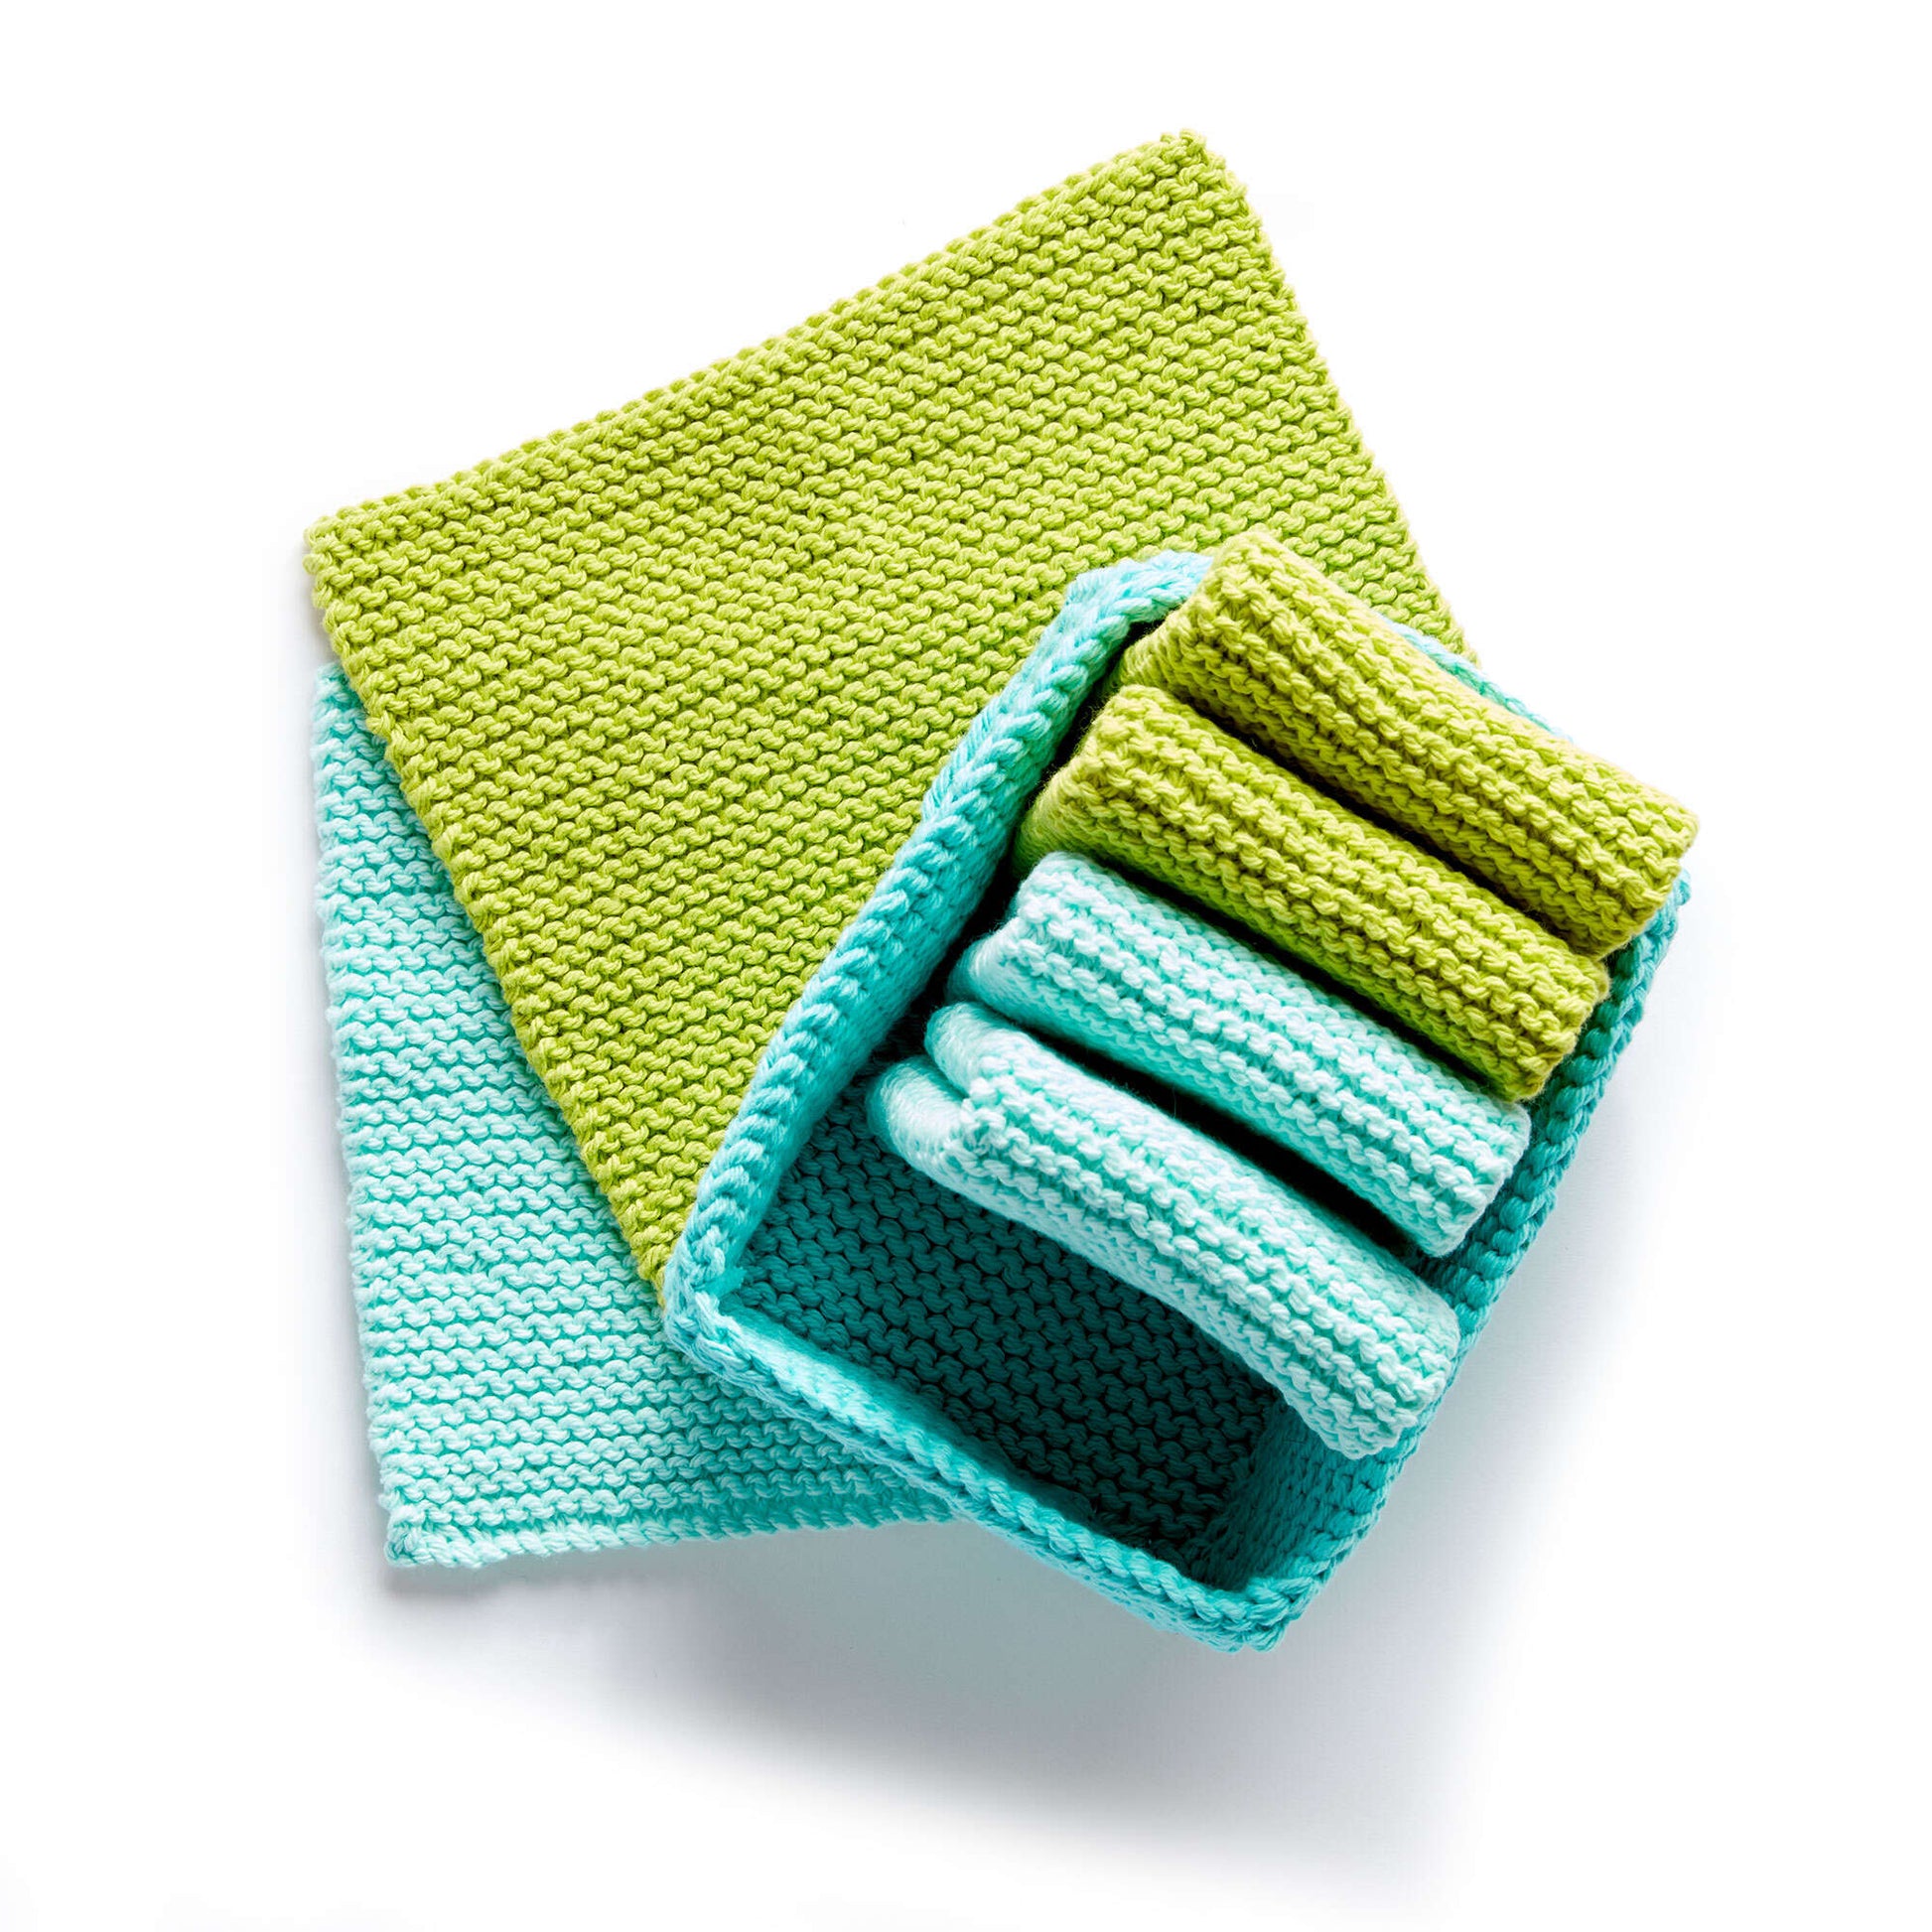 Citrus Inspired Microfiber Dish Towel Bundle Set